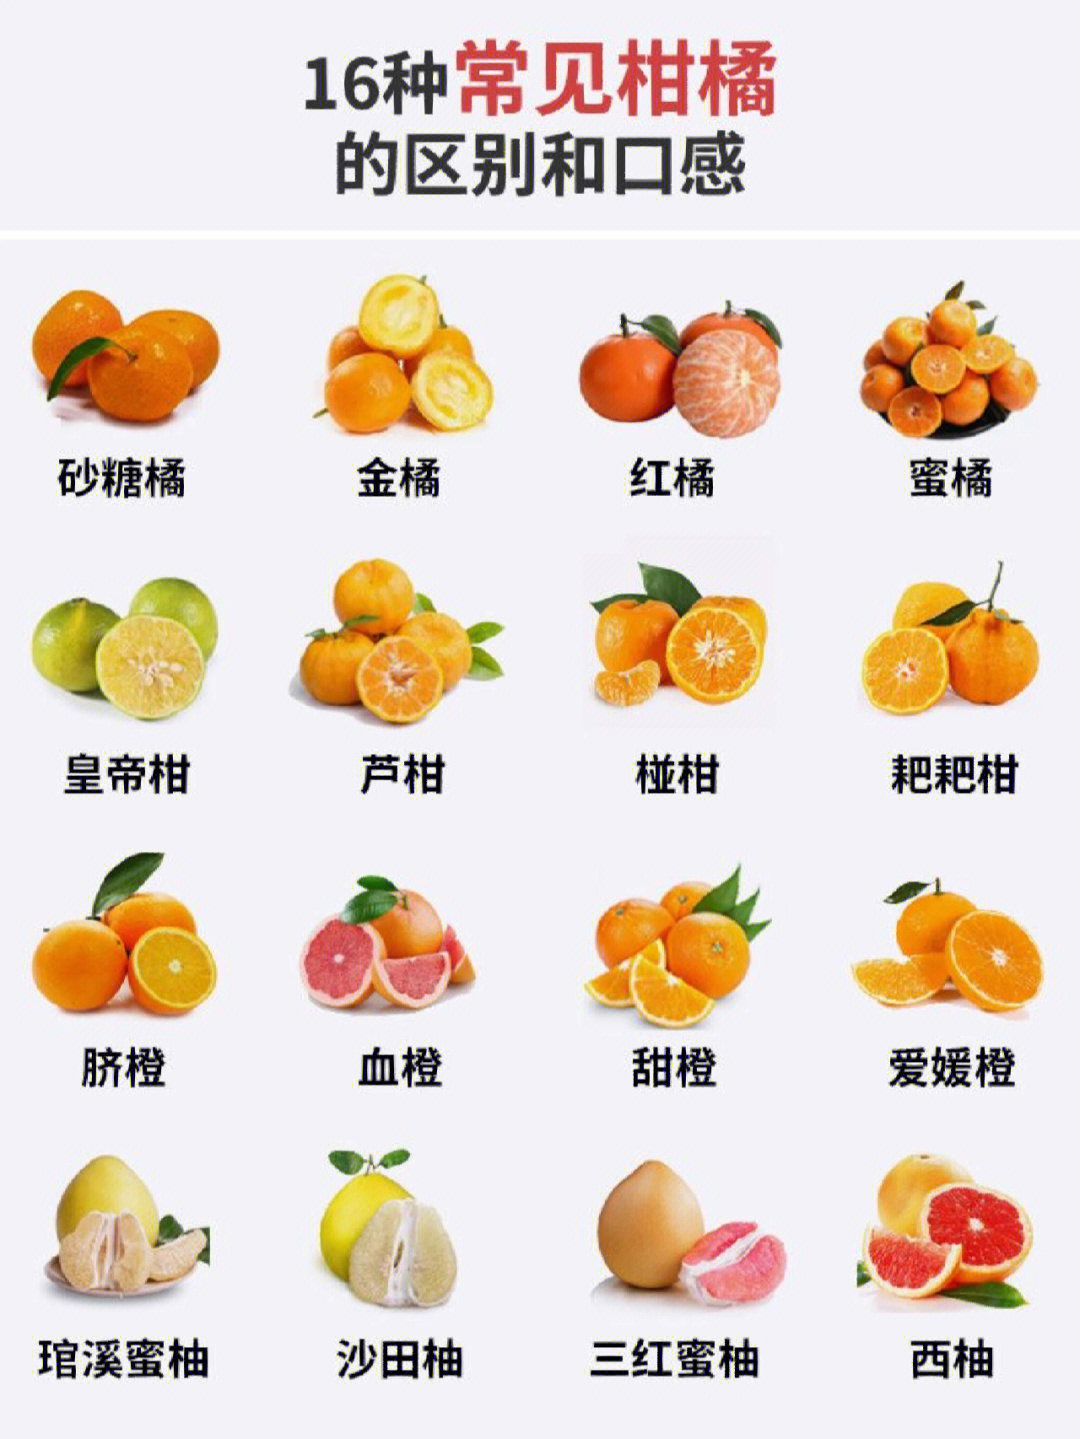 霜红桔橙品种介绍图片